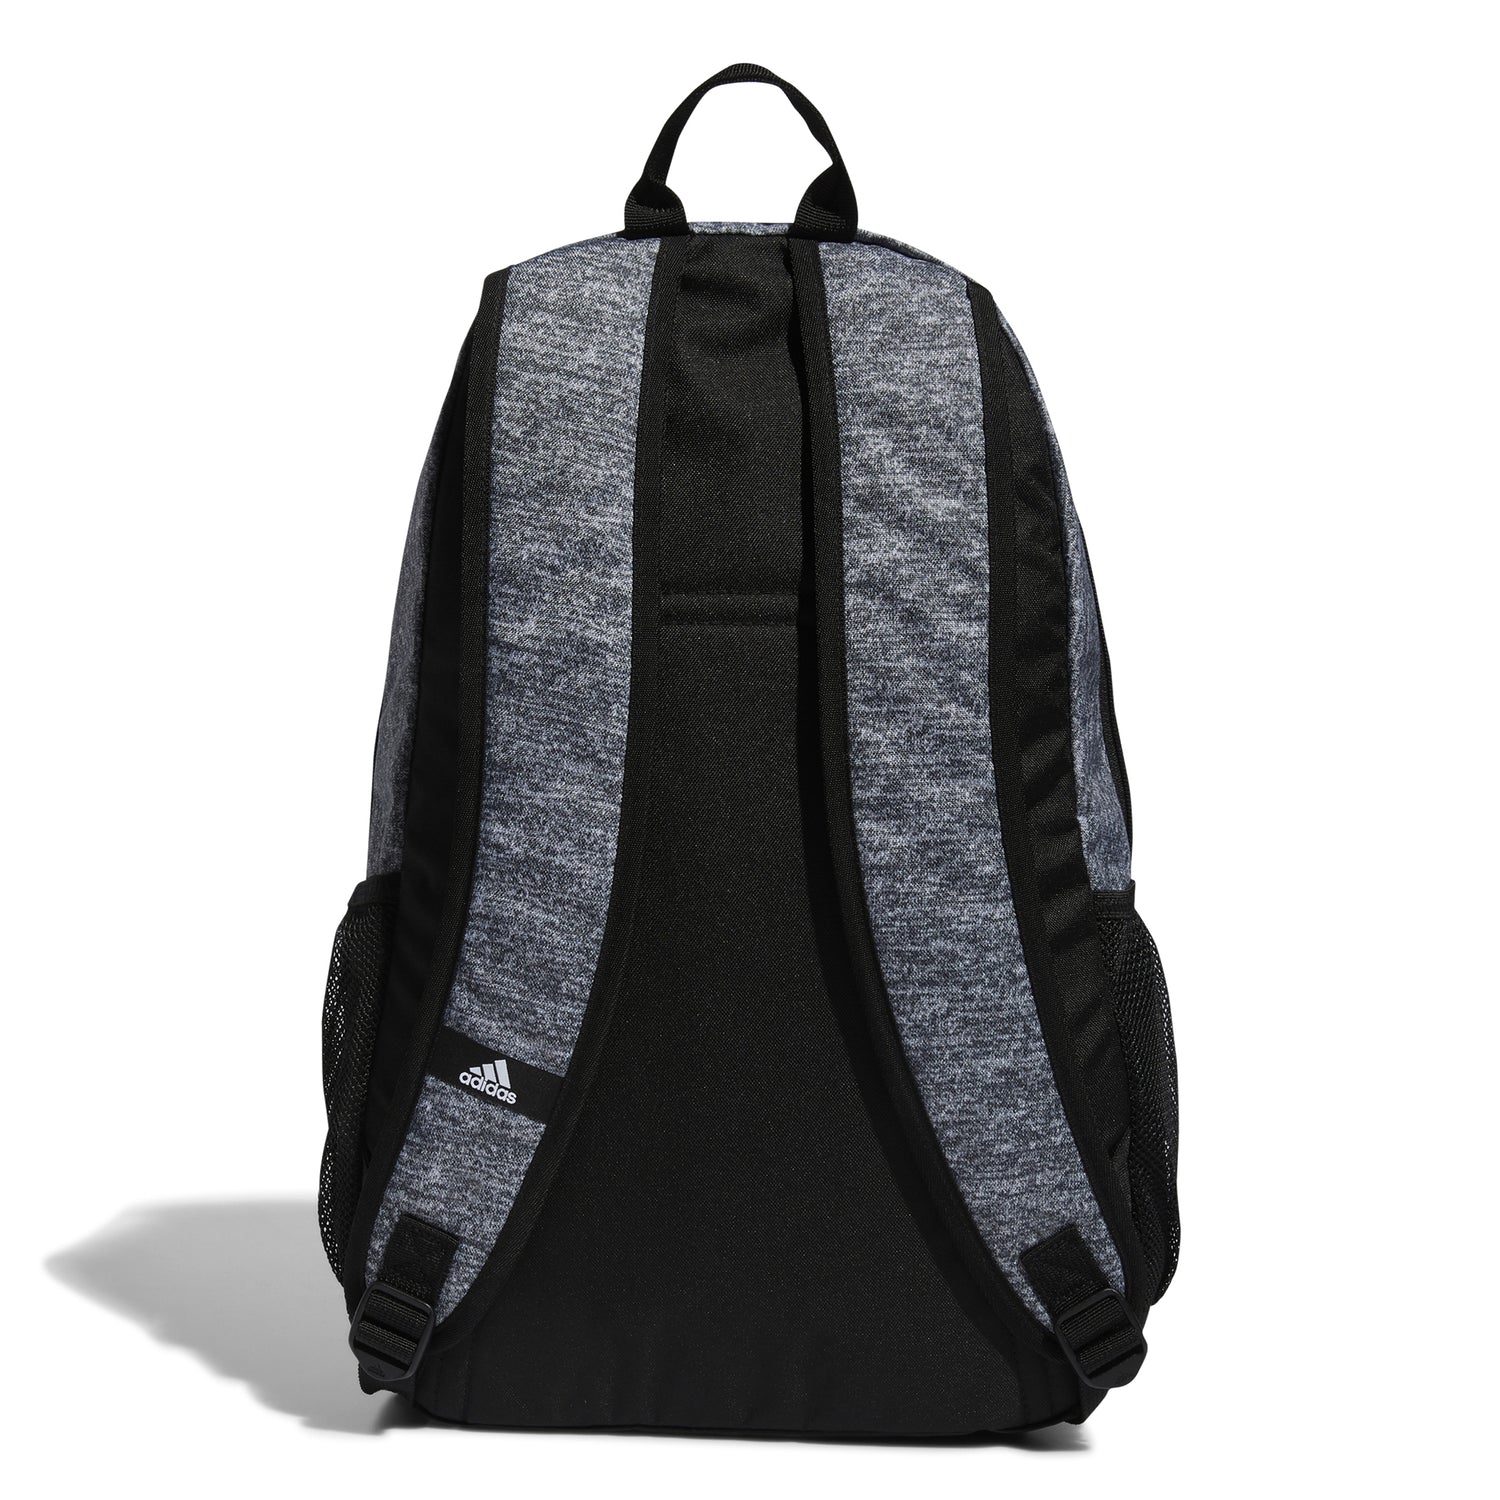 Foundation 6 Backpack - Bentley